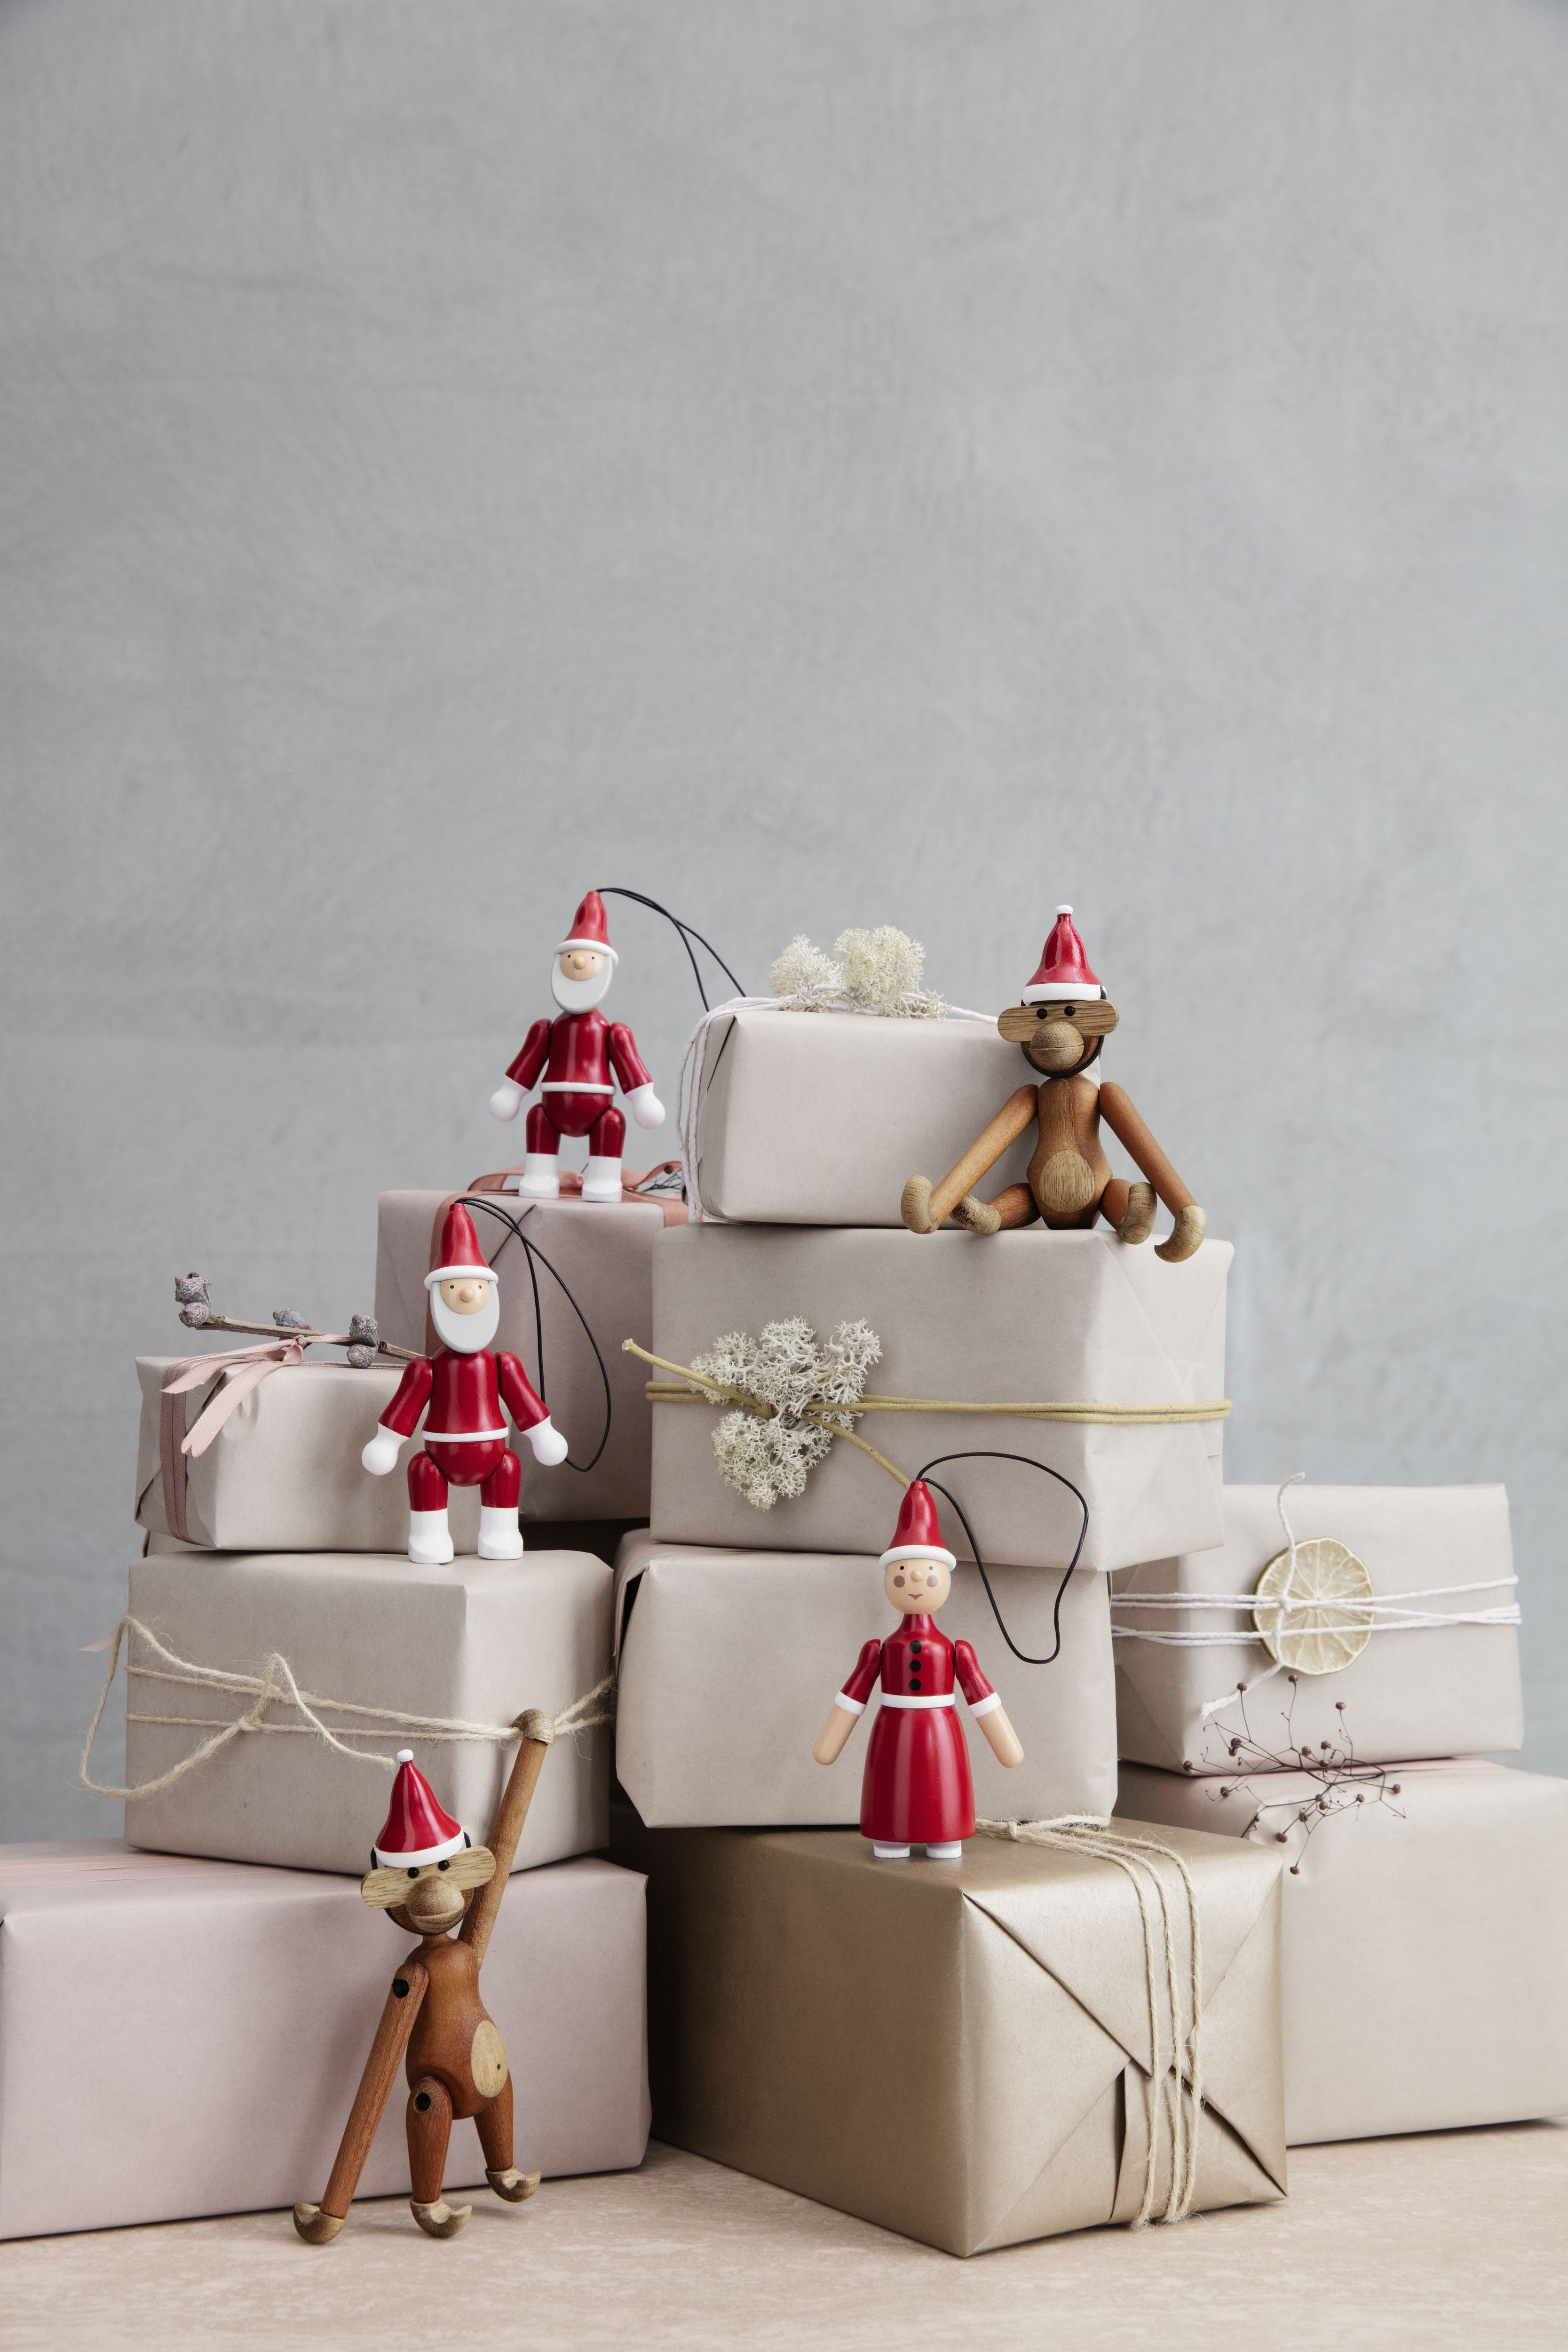 Kay Bojesen Ornaments Santa Claus And Santa Clara